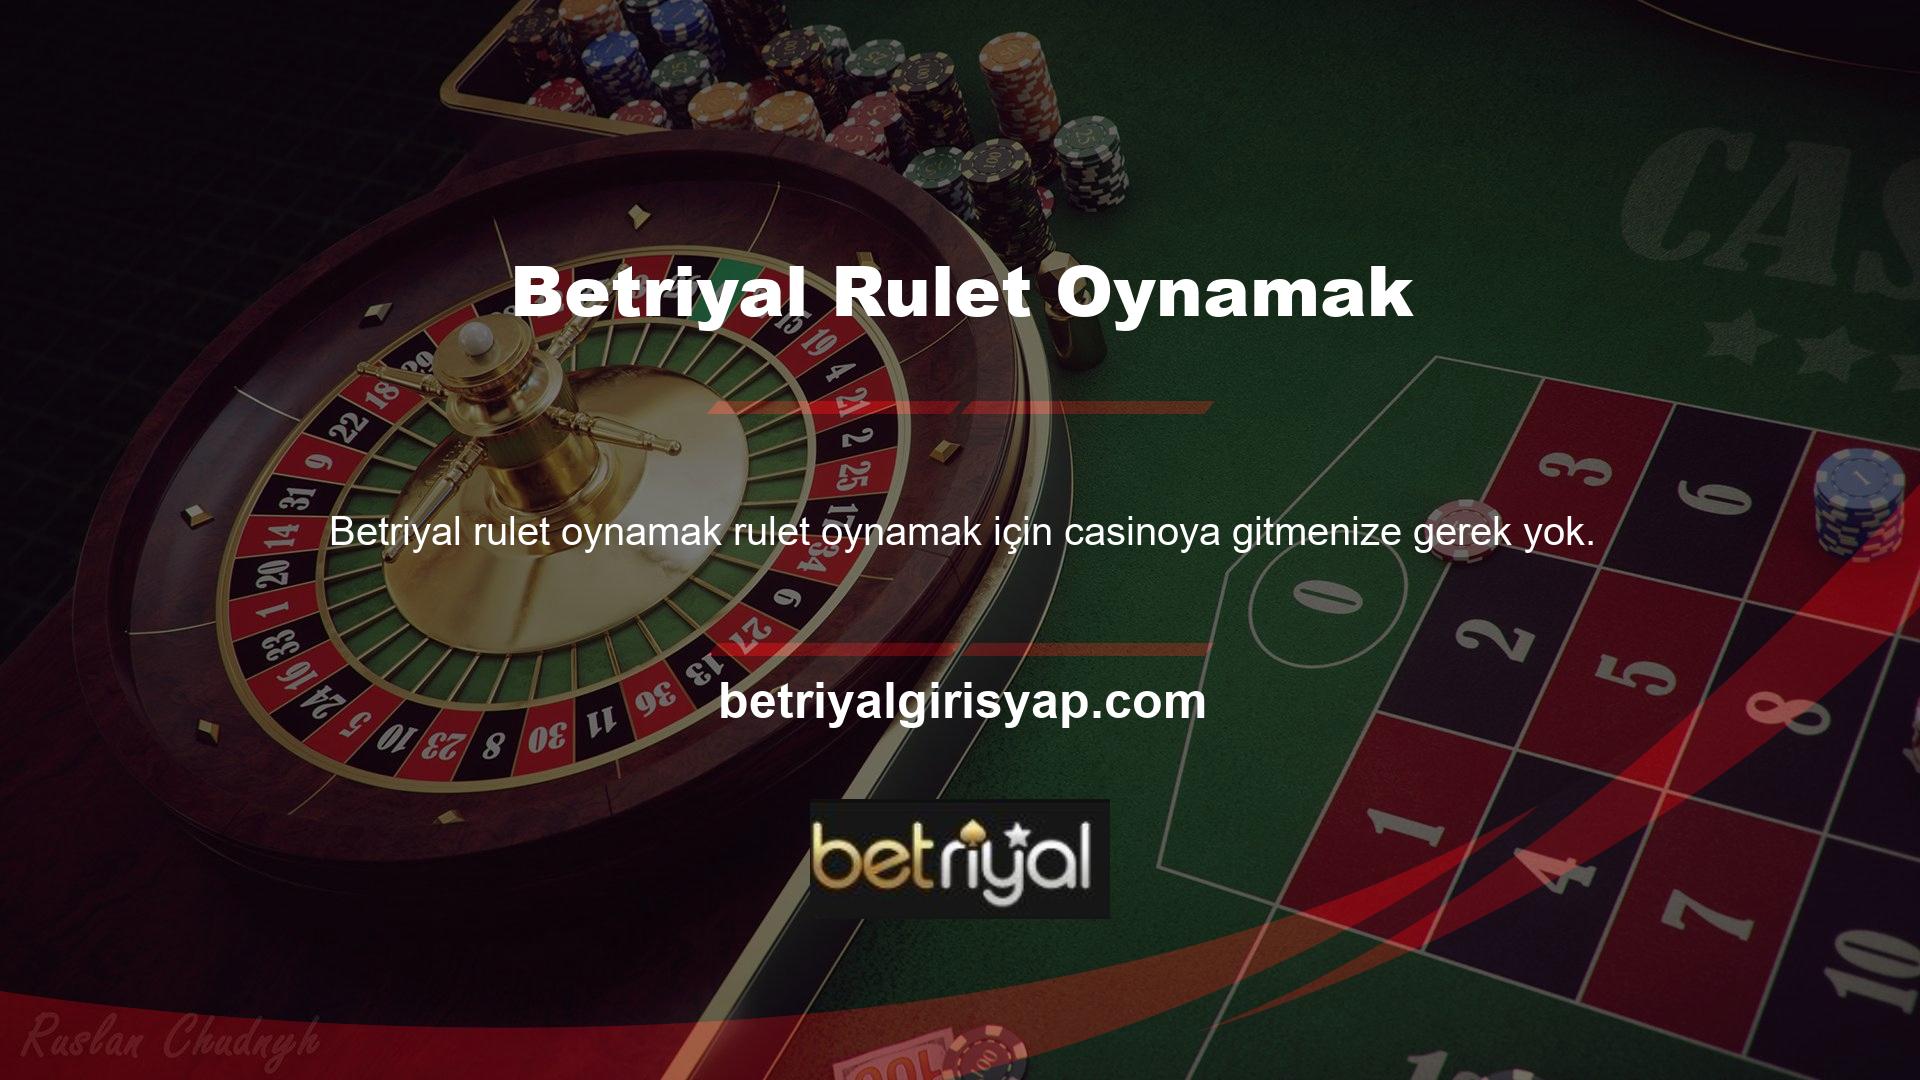 Betriyal online canlı casino hizmeti sayesinde evinizden veya bulunduğunuz her yerden bilgisayarınız veya akıllı telefonunuzdan rulet oyunlarına katılabilir ve oynayabilirsiniz